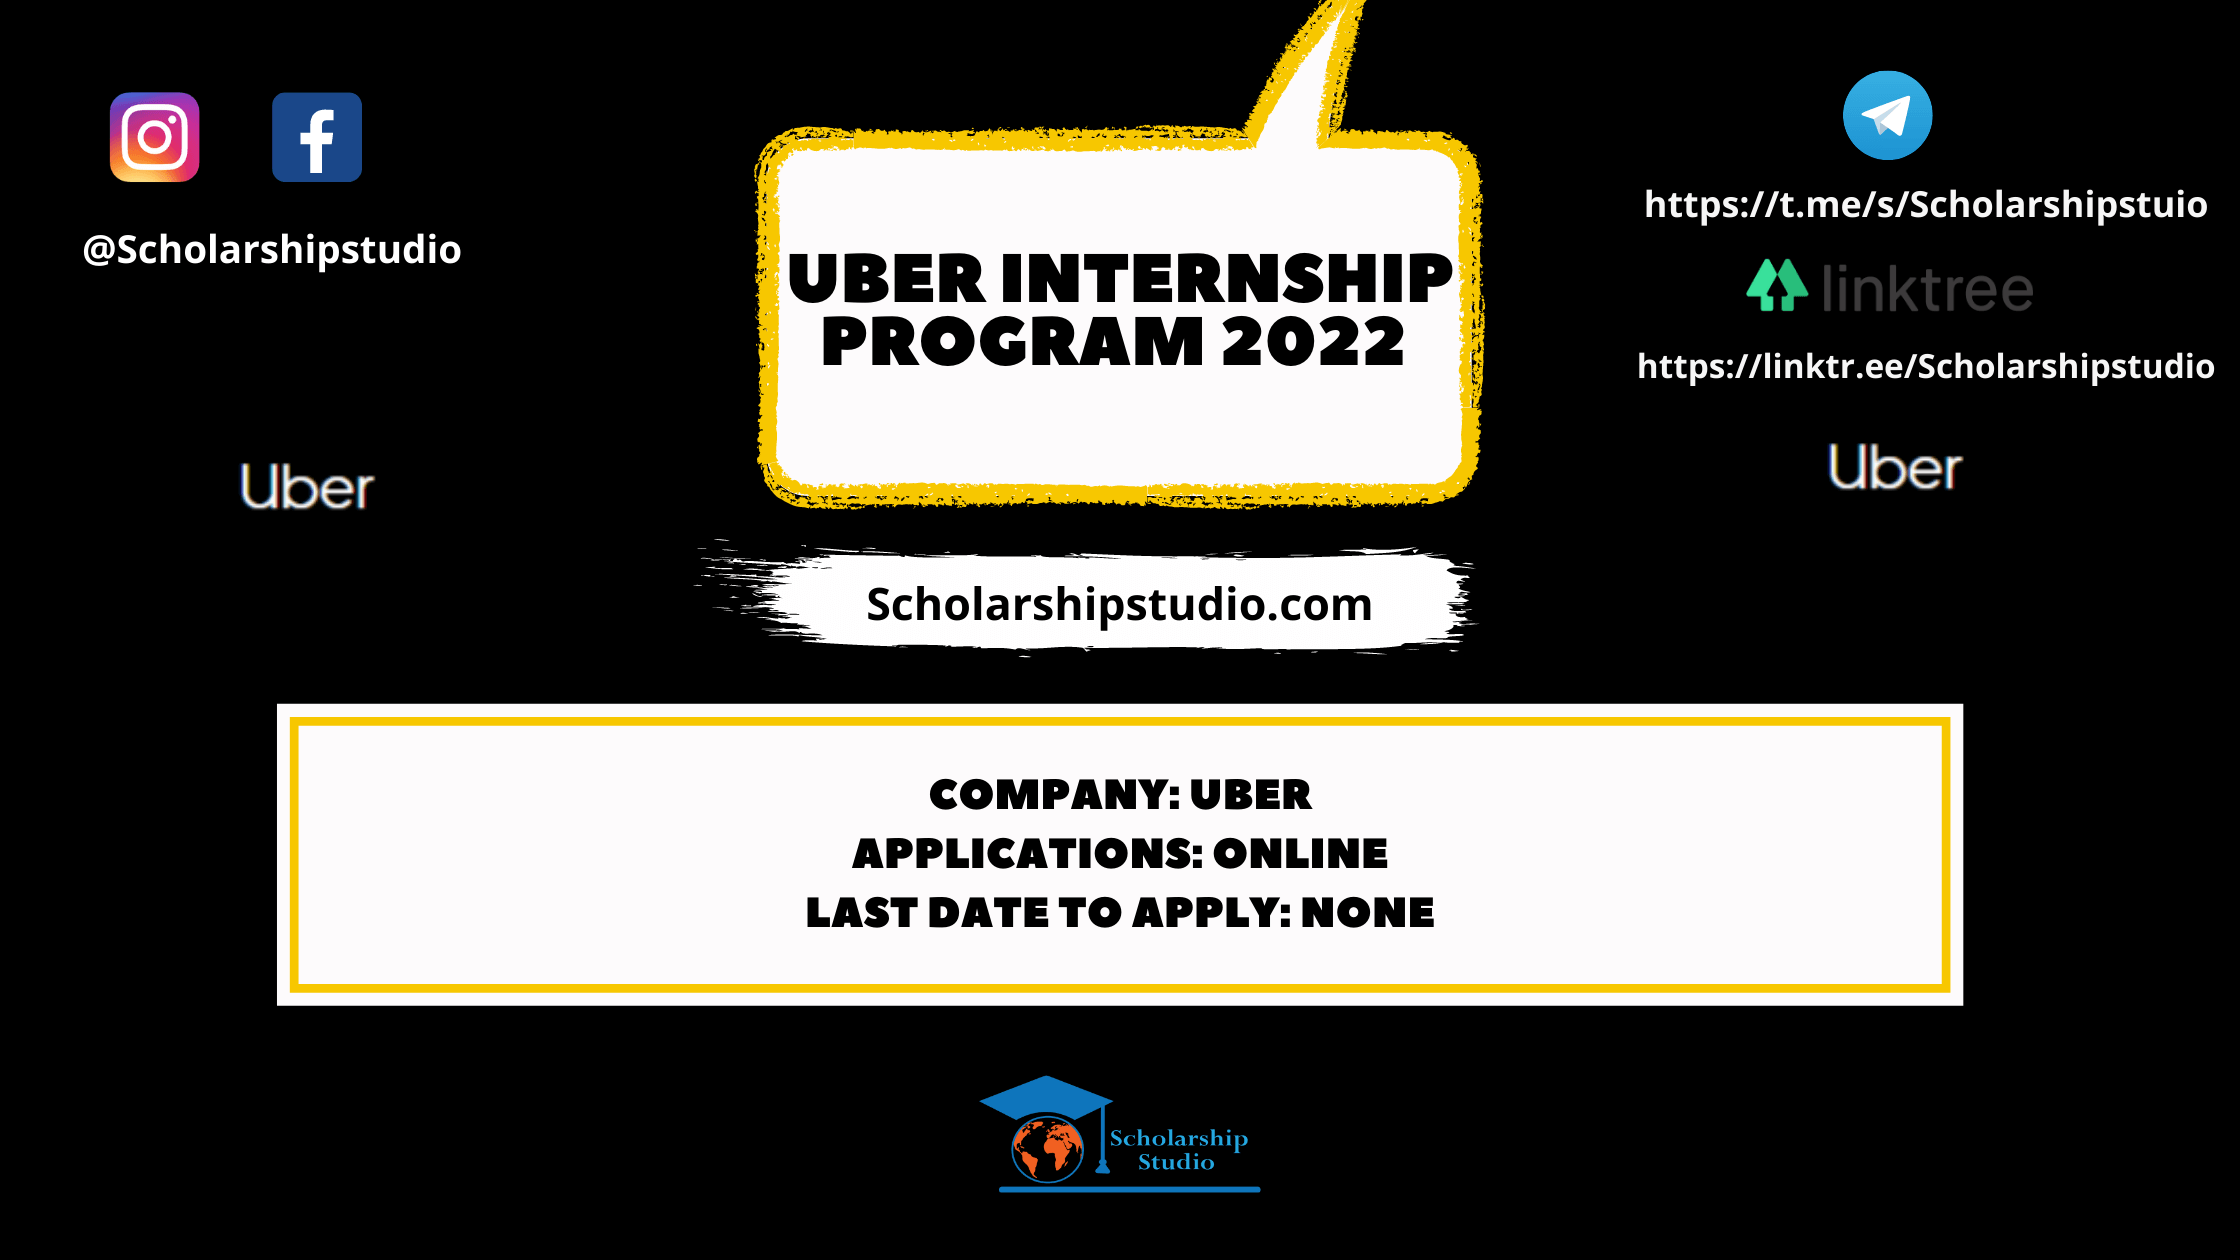 Uber Internship Program 2022 Scholarship studio